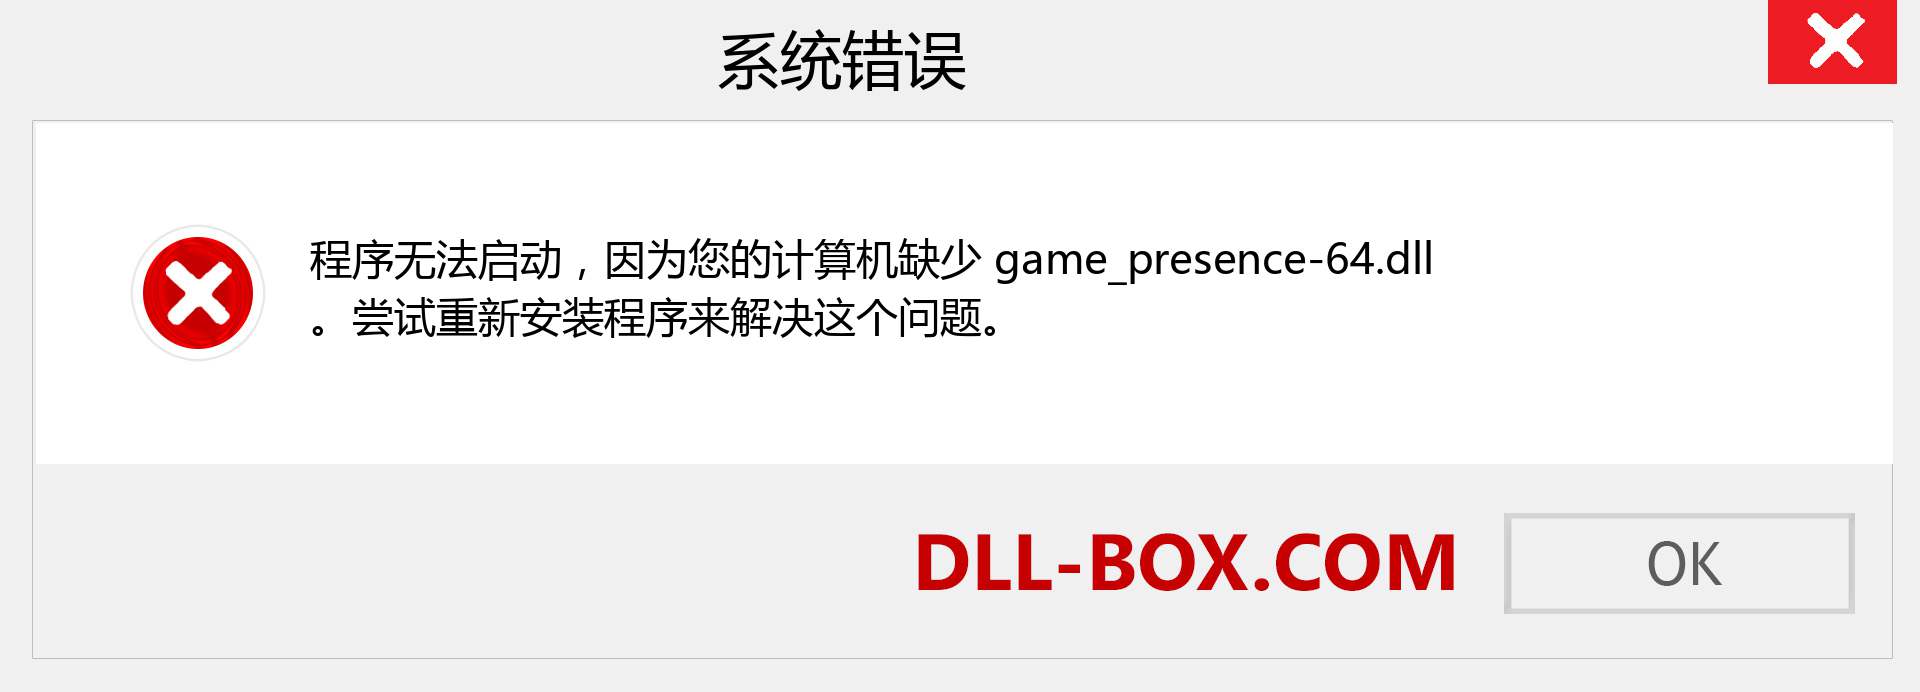 game_presence-64.dll 文件丢失？。 适用于 Windows 7、8、10 的下载 - 修复 Windows、照片、图像上的 game_presence-64 dll 丢失错误